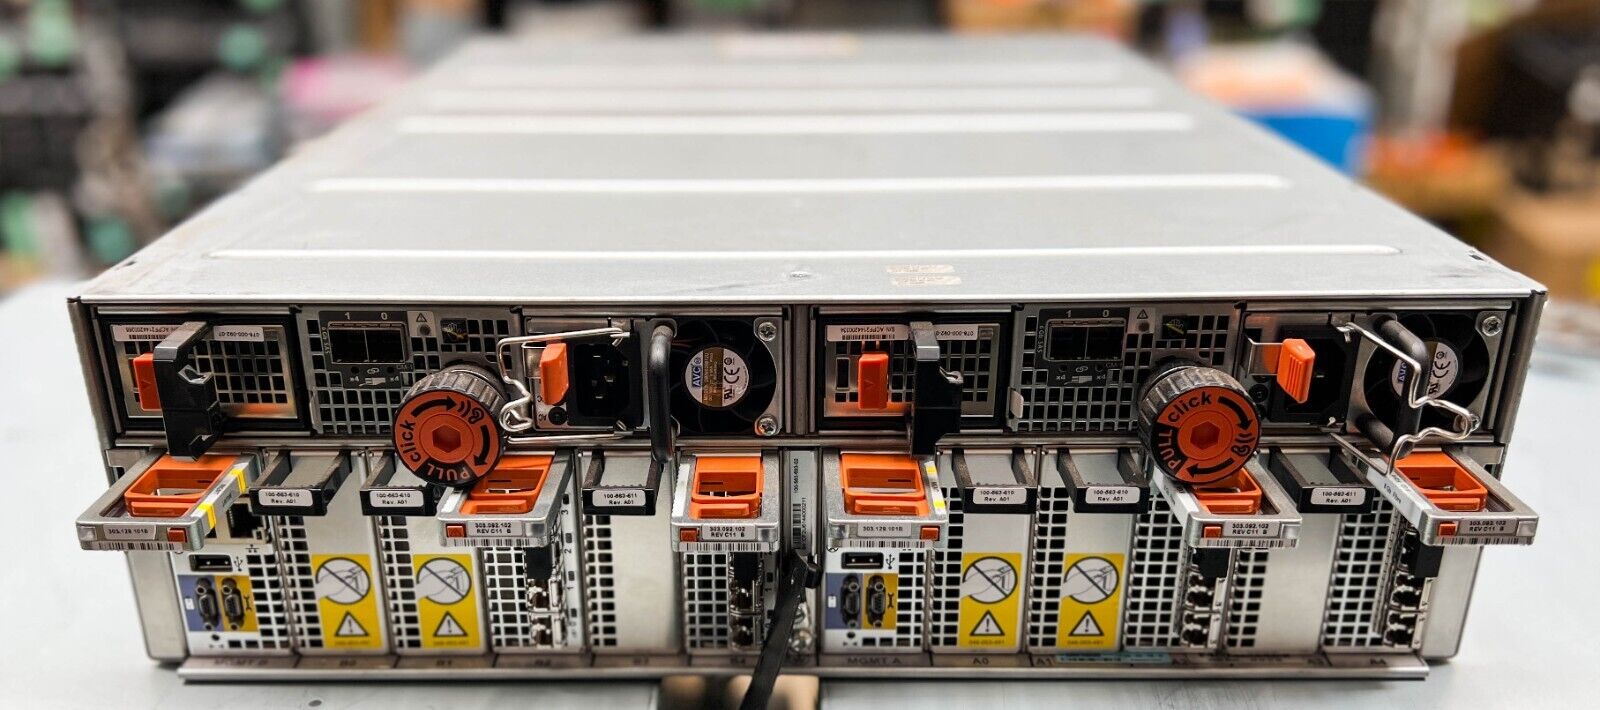 EMC VNX 5200 JTFR Storage Array Storage System 25 x 900GB SAS HDDs + 6xModules